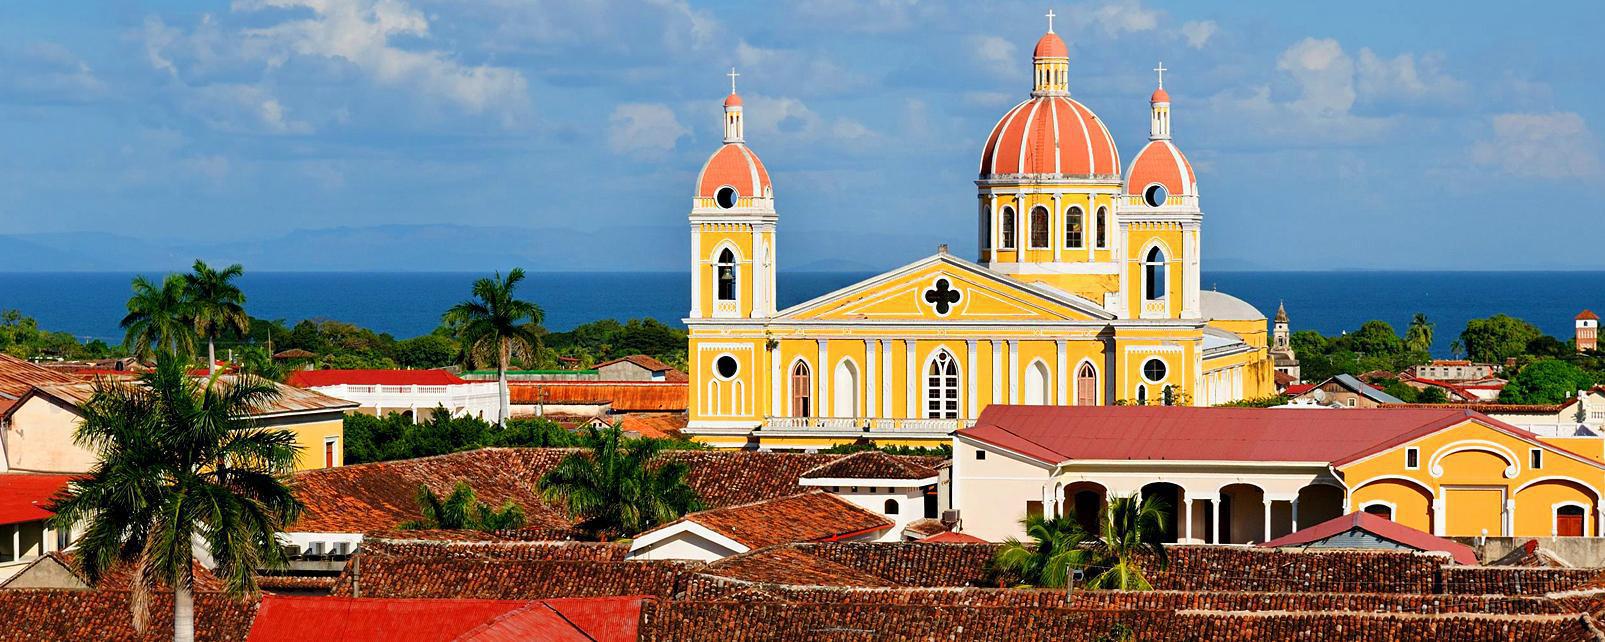 Granada, Nicaragua là lựa chọn người thích sống ở những thành phố ven biển